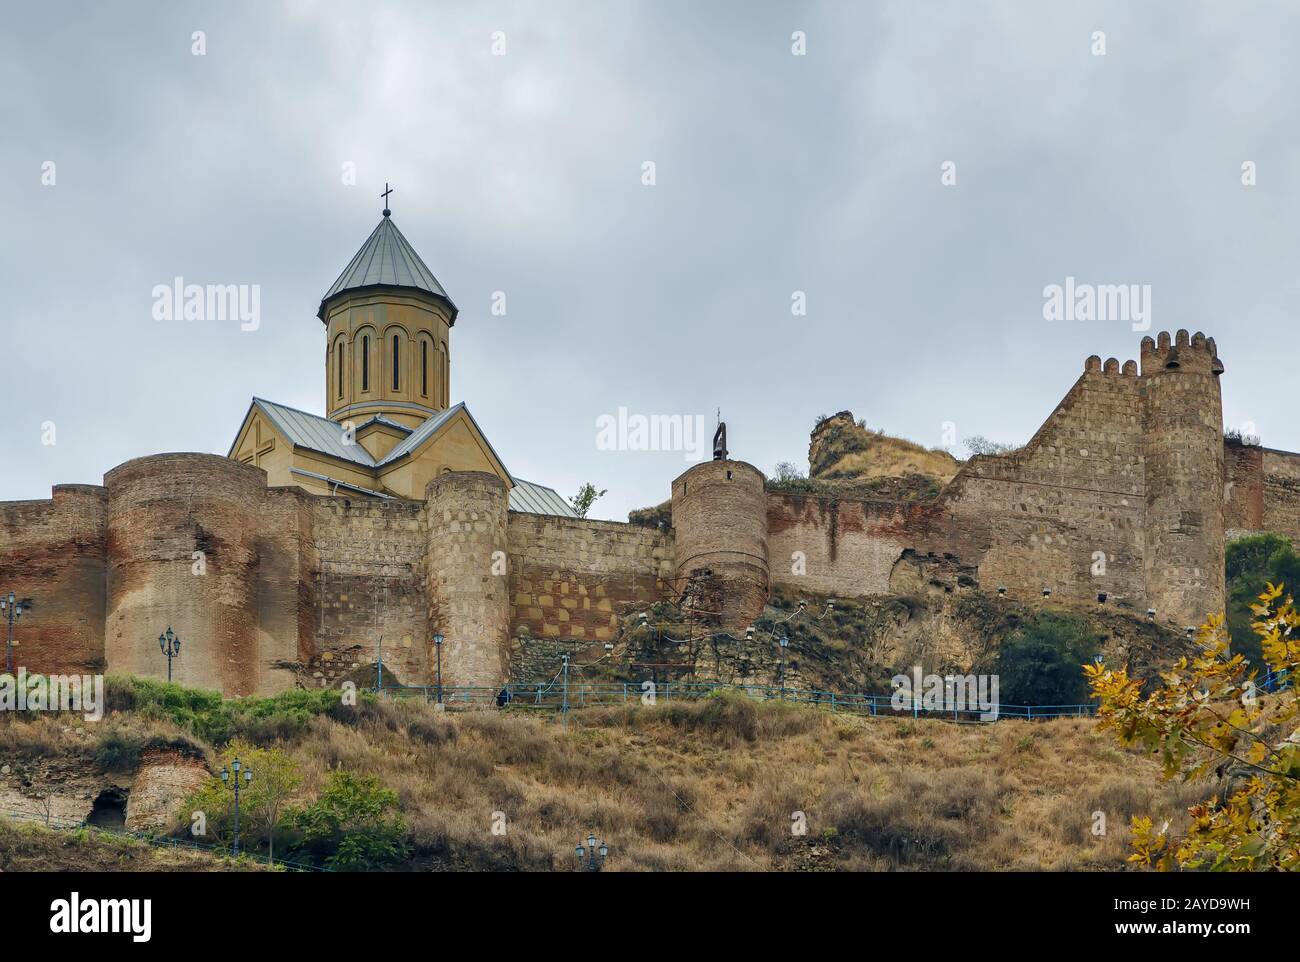 La forteresse de Narikala surplombant Tbilissi, Géorgie Banque D'Images